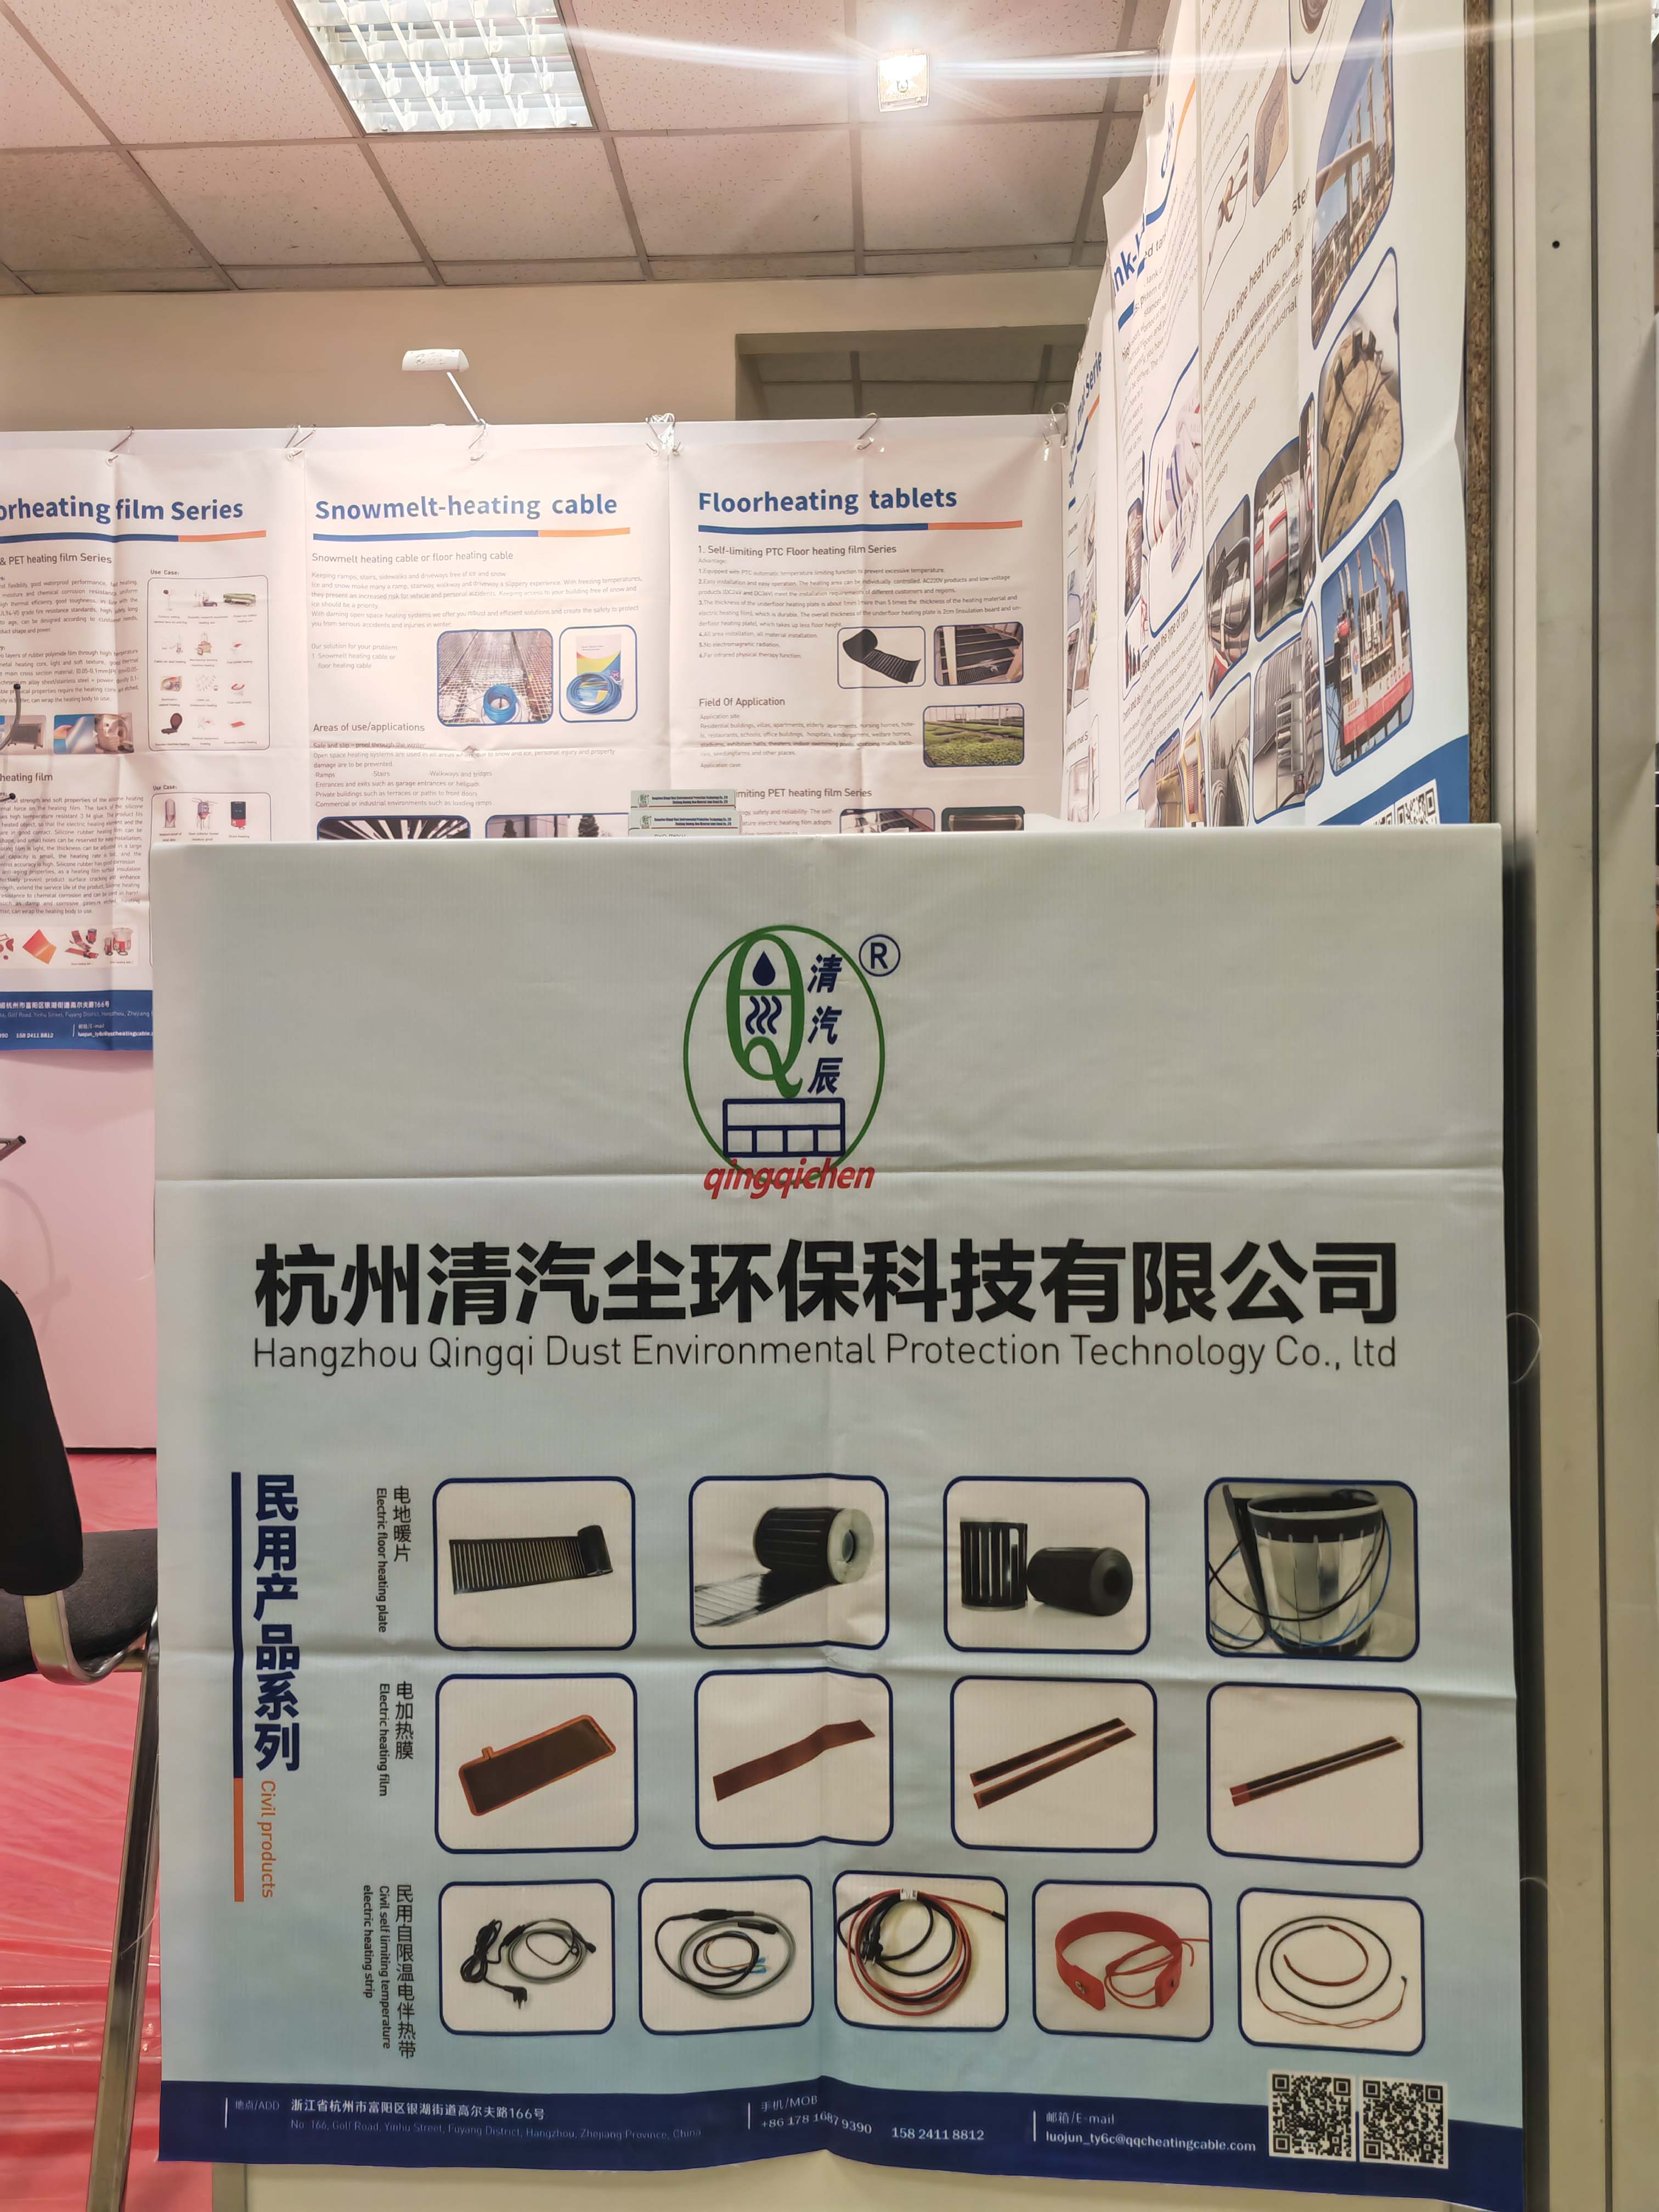  Hangzhou Qingqi Dust Environmental Protection Technology Co., Ltd. em 19 a 21 de março Exposição CabeX em Moscou, Rússia, dá as boas-vindas a amigos russos na exposição para trocar e negociar orientações 